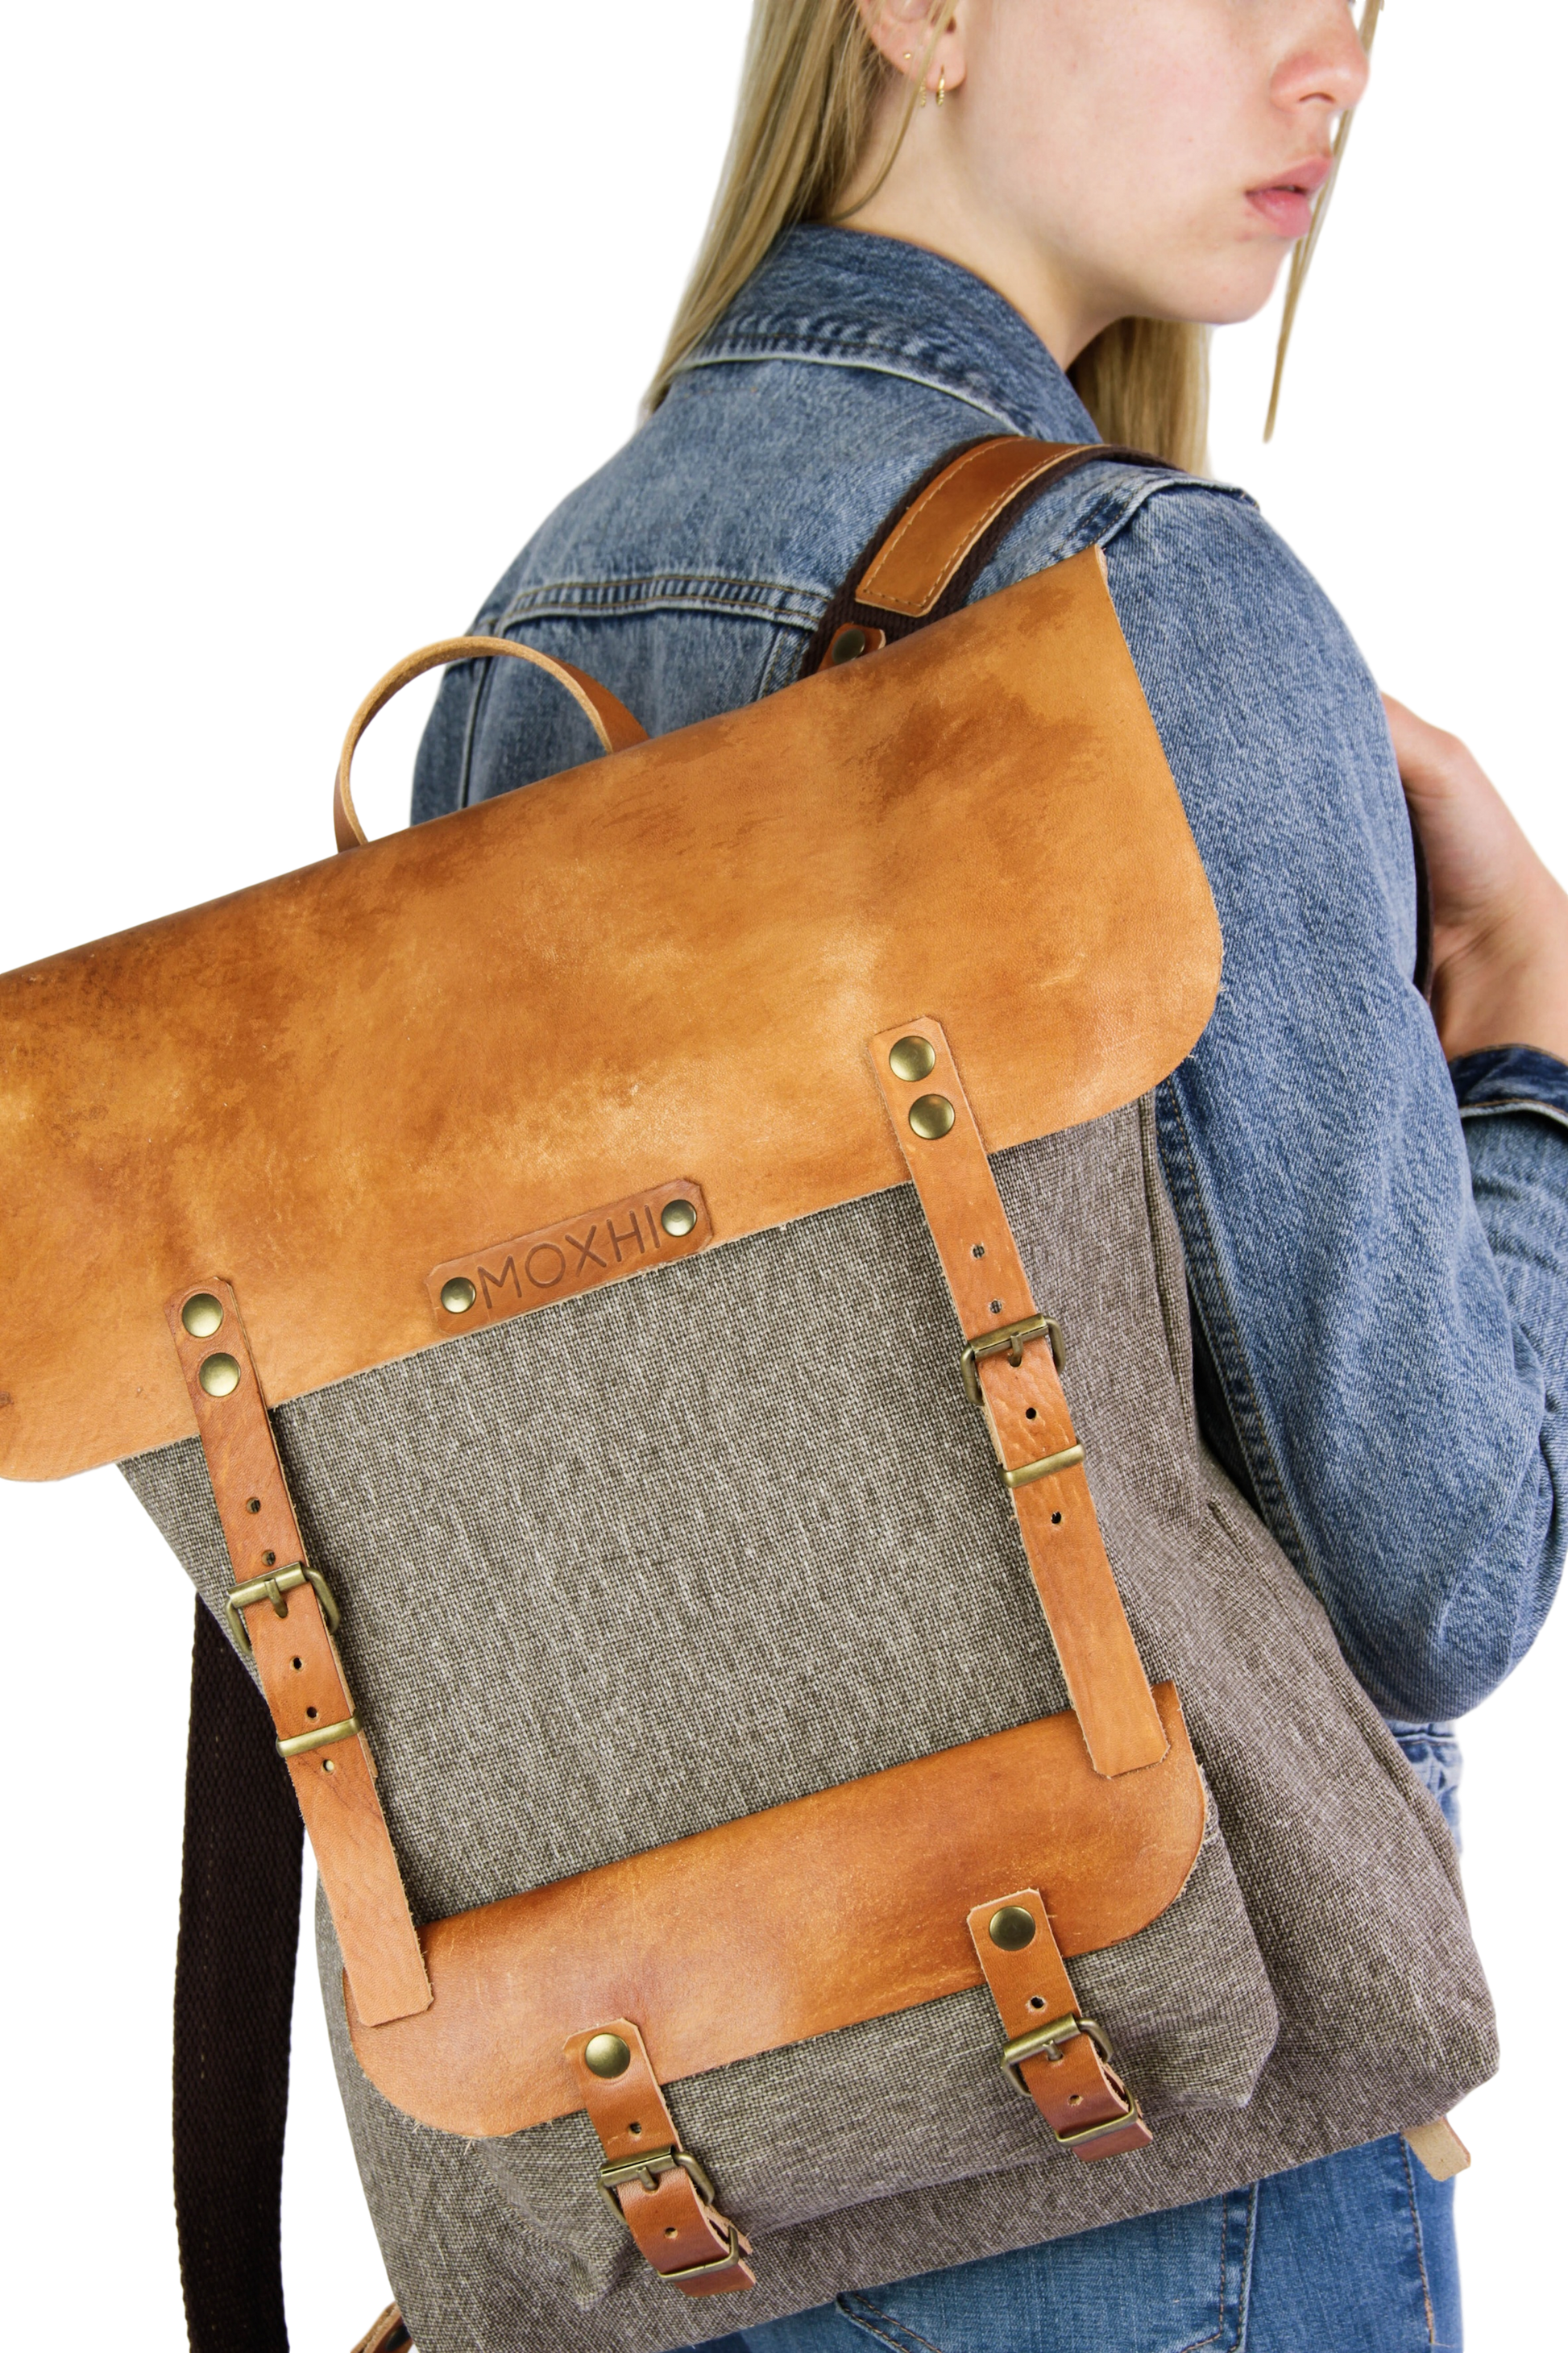 Viajero classic artisanal backpack handmade women